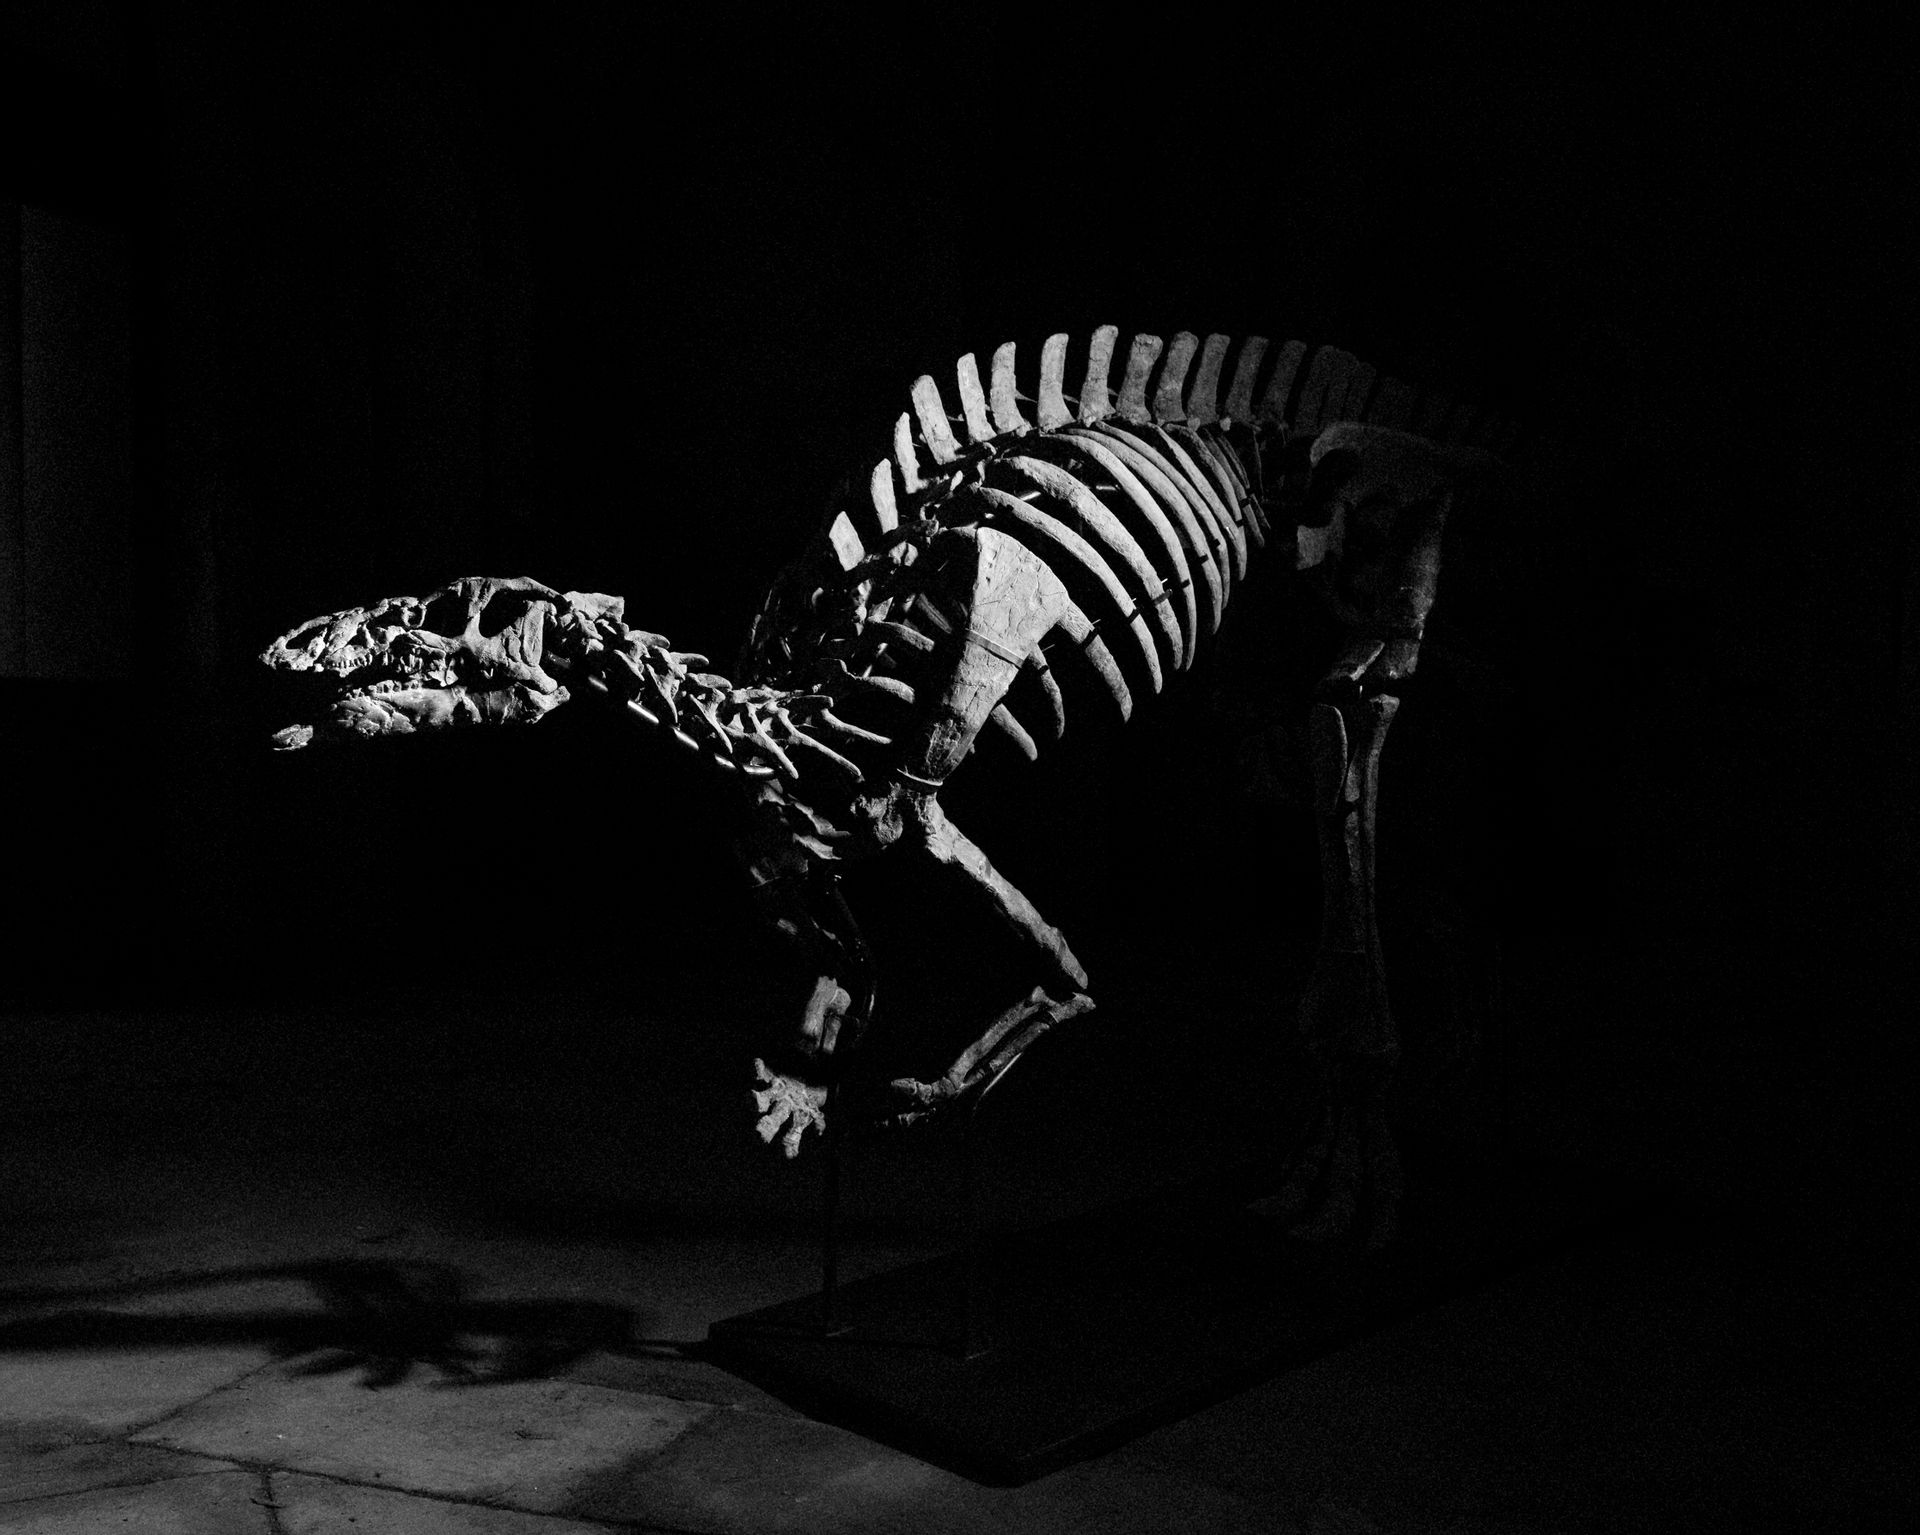 « Barry », Iguanodontia, Camptosaurus sp. Formation de Morrison Tithonien, Jurassique supérieur (150-145 Ma). Découvert vers 2000 dans le comté de Crook, Wyoming, États-Unis. 210 x 500 x 150 cm. © Giquello